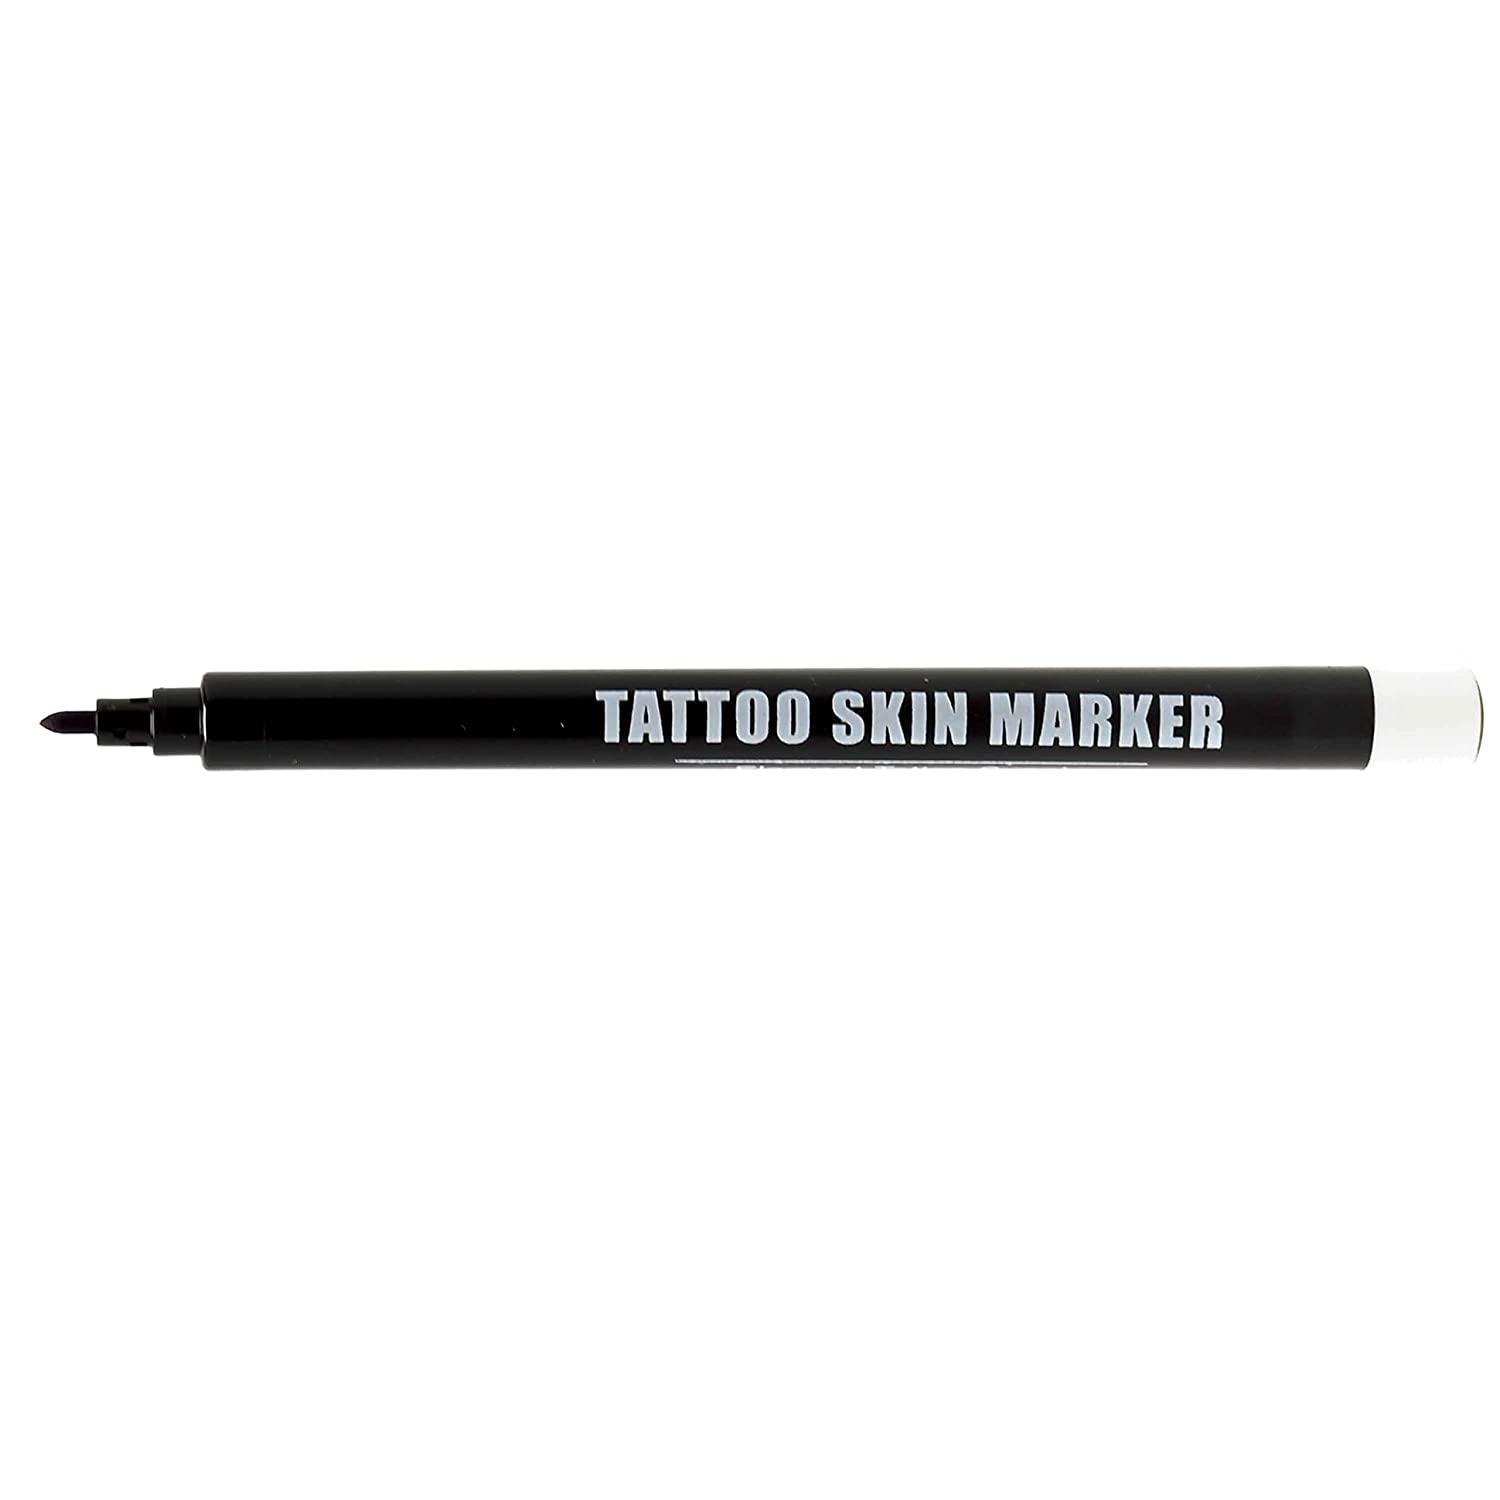 Tattoo stencil pens / skin markers